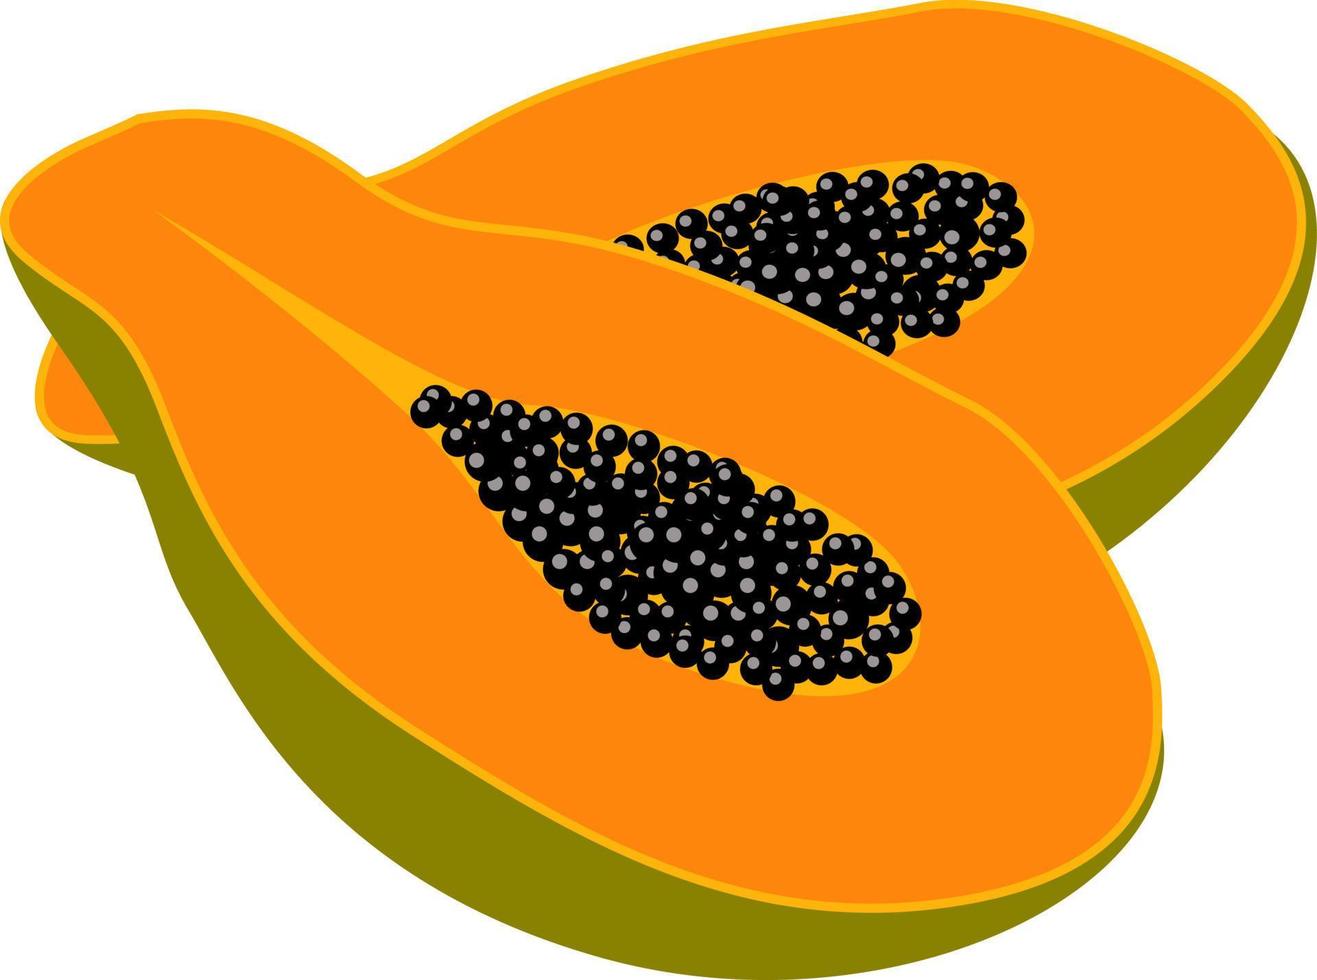 Reife Papaya, Illustration, Vektor auf weißem Hintergrund.